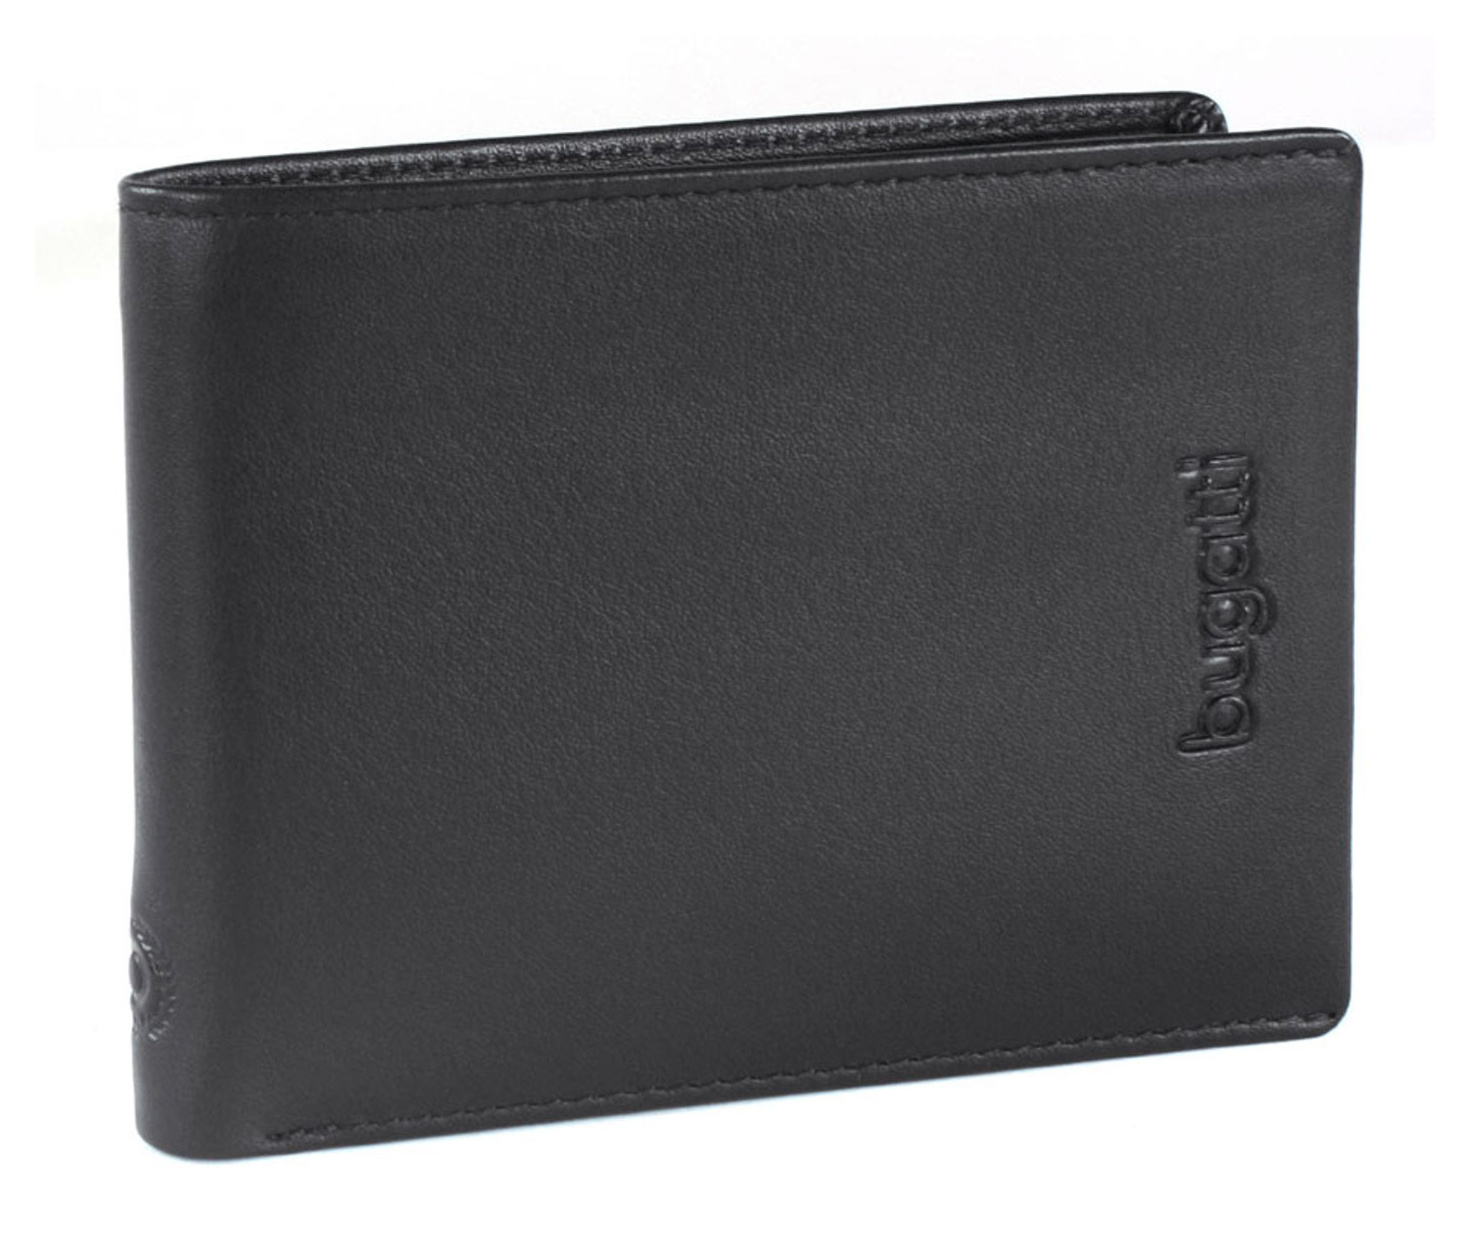 Pánská peněženka Bugatti Vertice flap 493183-01 černá